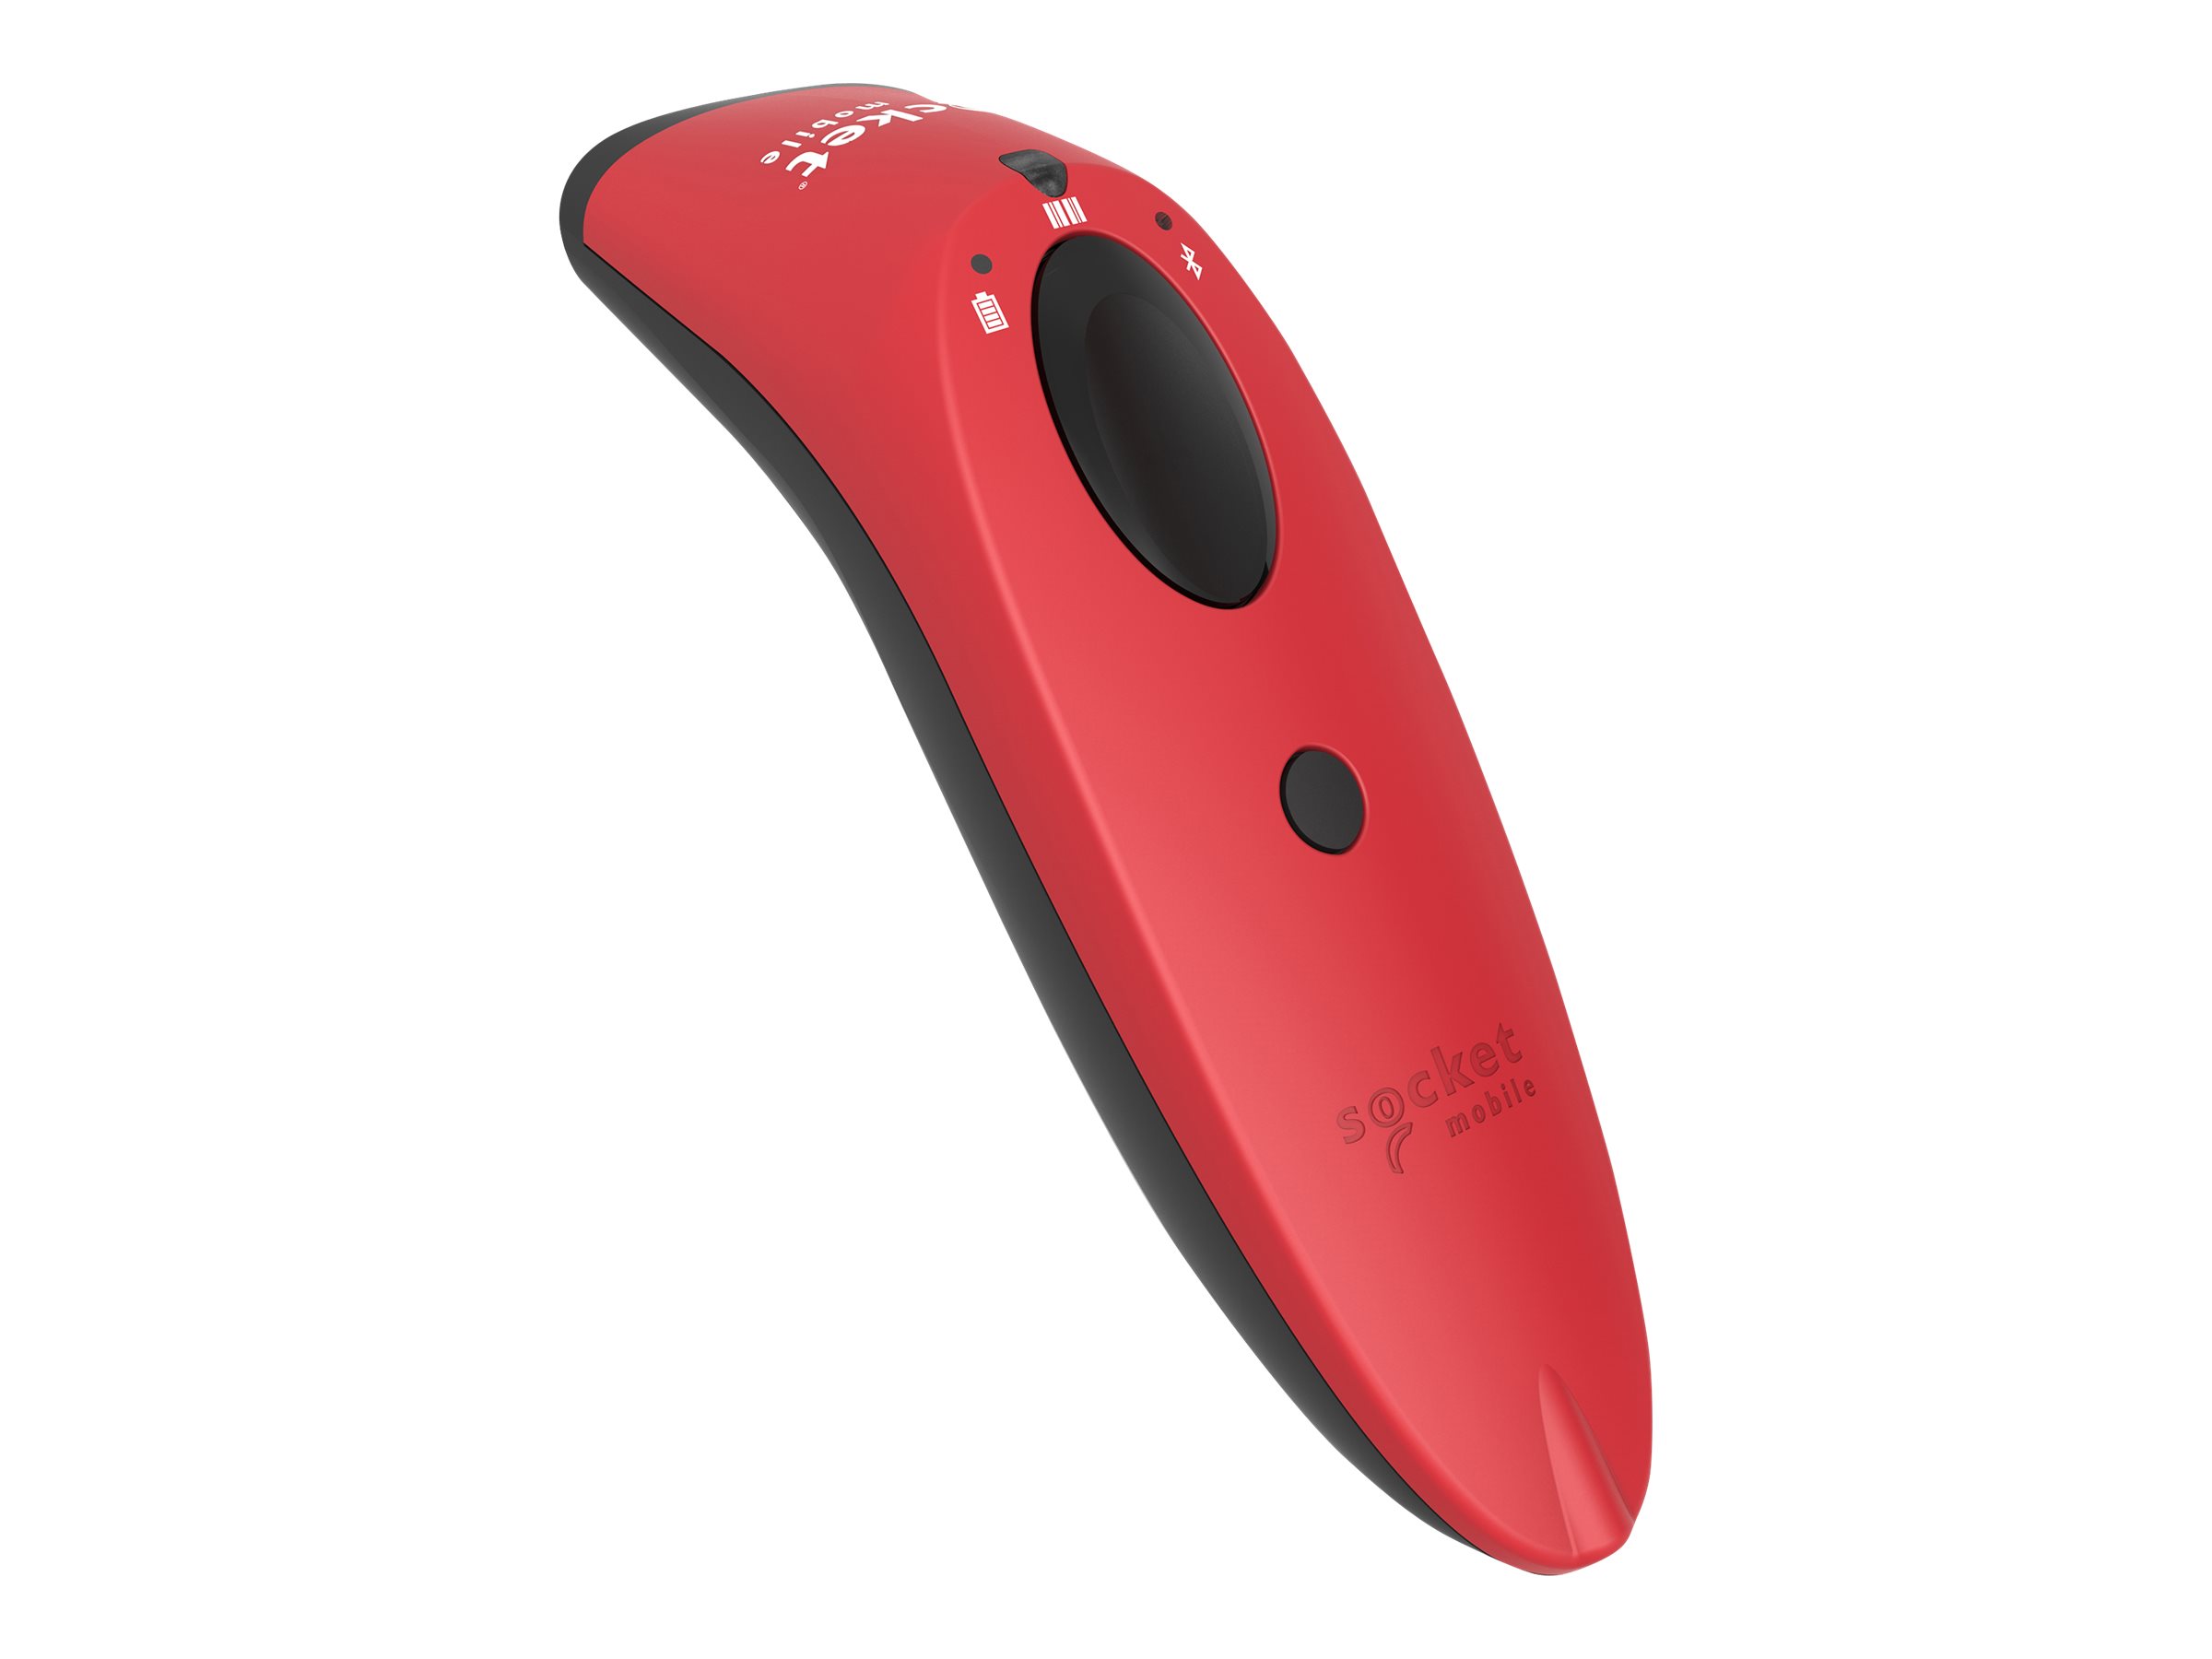 Socket Mobile CX3400-1858 S730 1D Laser Barcode Scanner&#44; Red - image 2 of 3